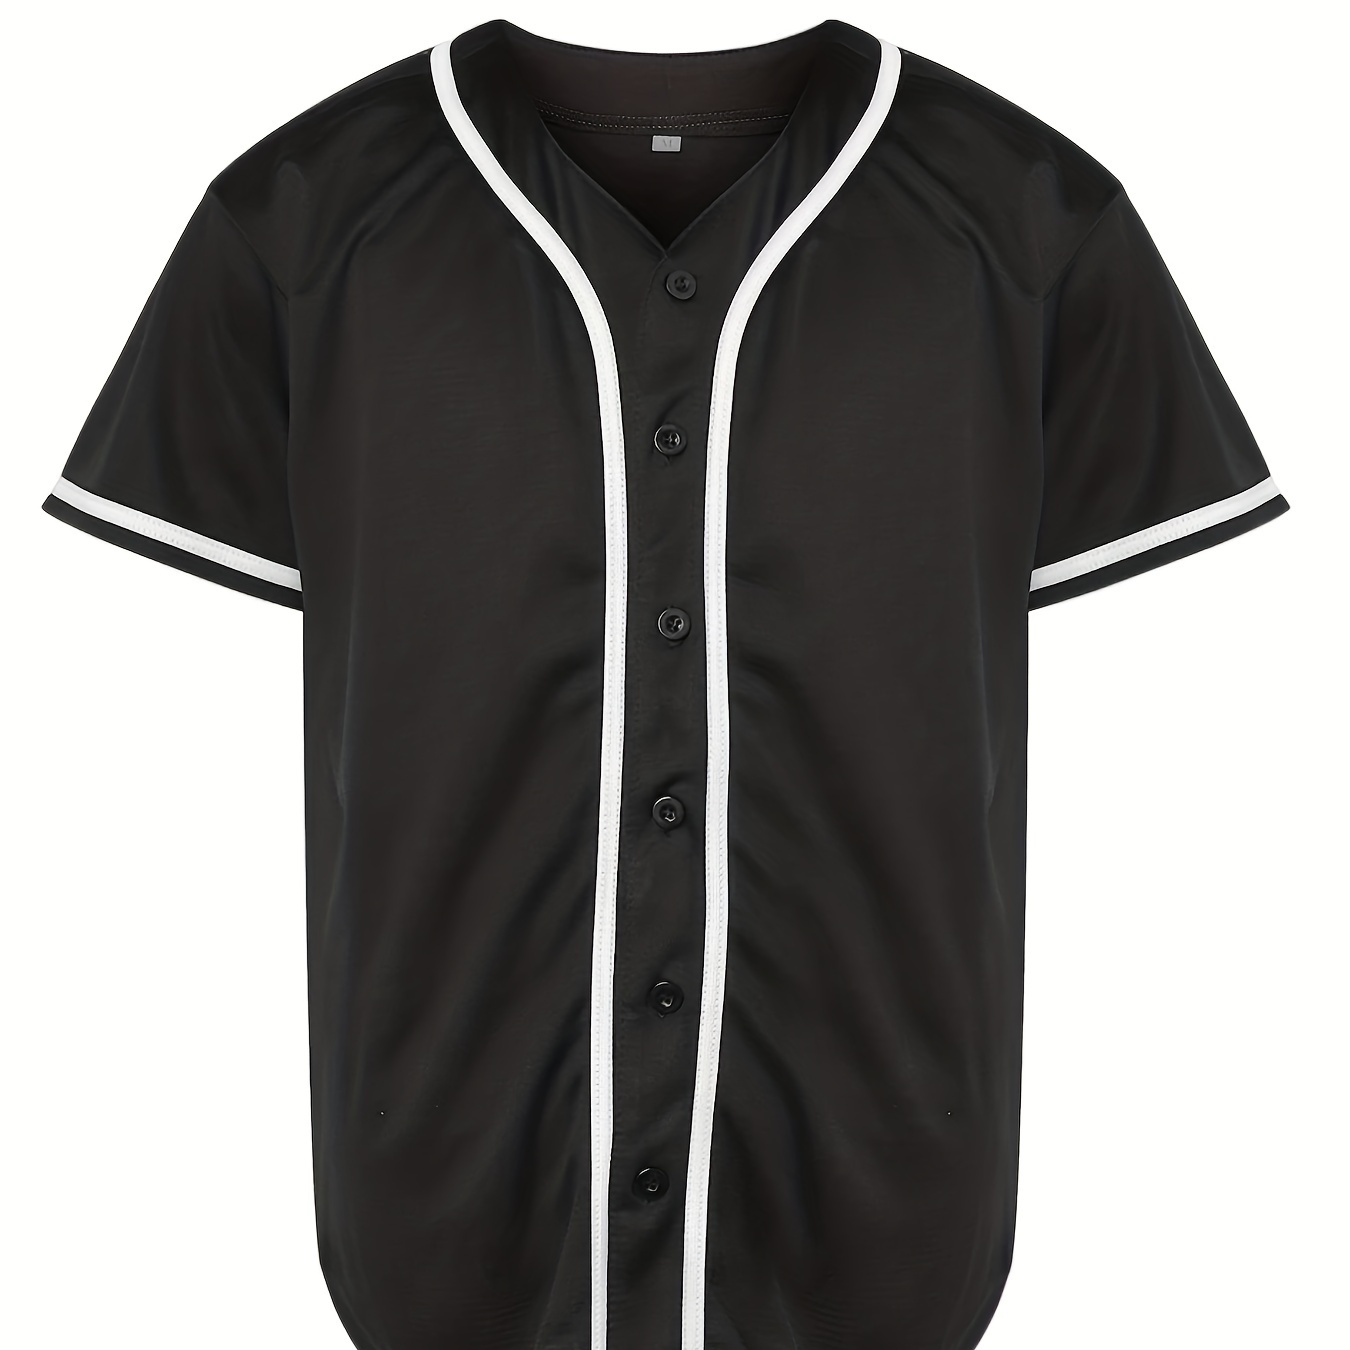 

Blank Plain Hip Hop Hipster Baseball Jersey, Button Up Sport Shirt, Uniforms For Men Women